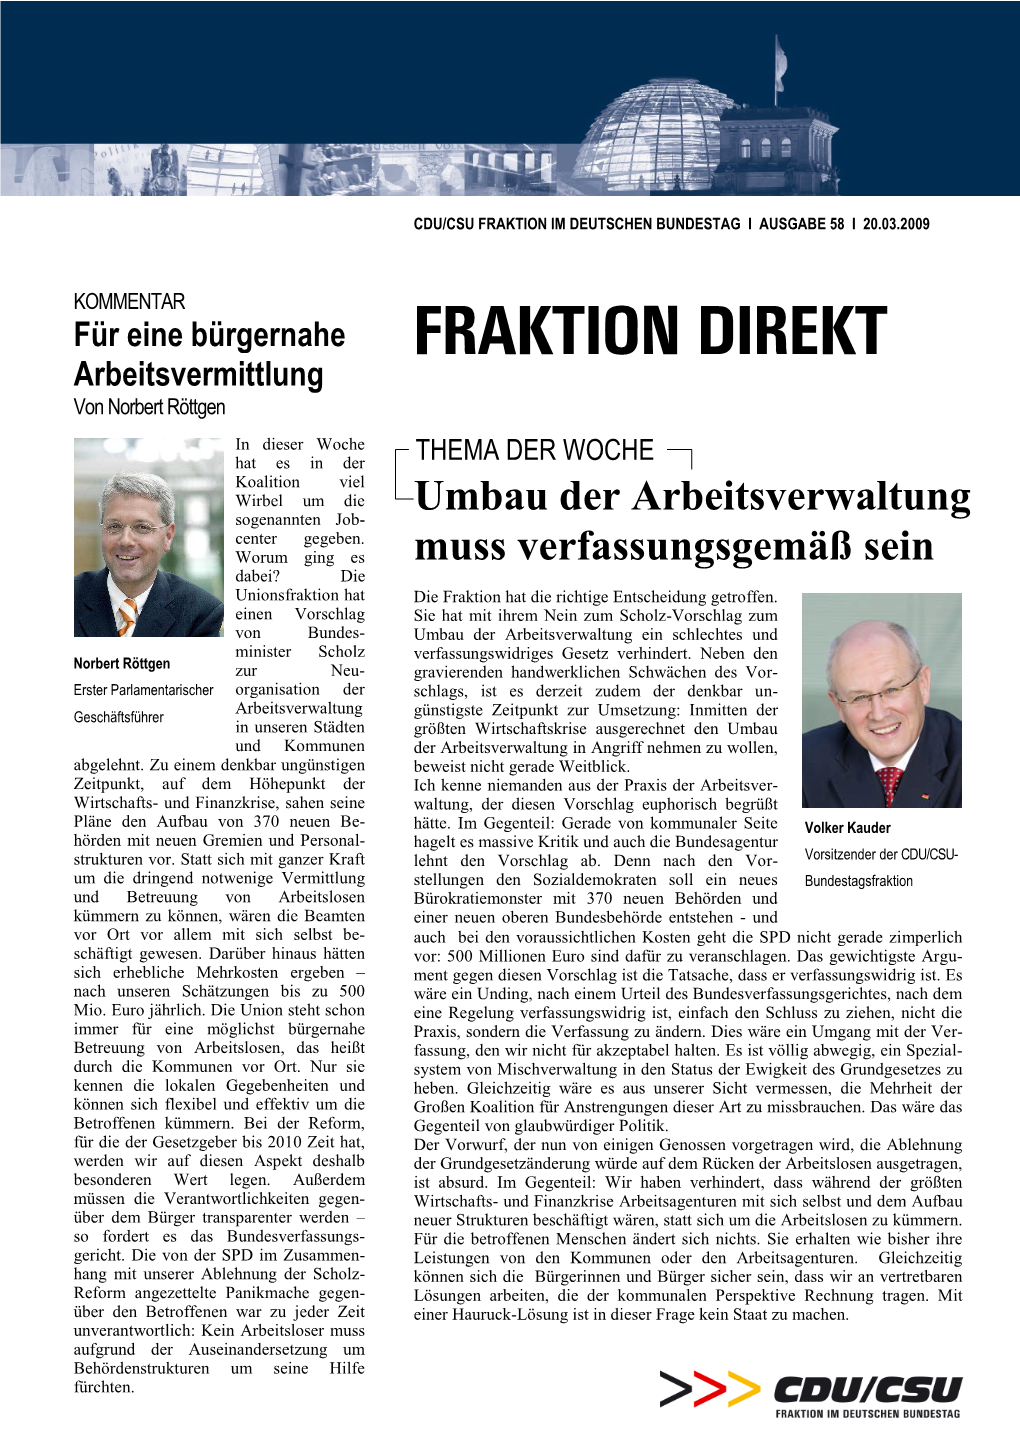 FRAKTION DIREKT Arbeitsvermittlung Von Norbert Röttgen